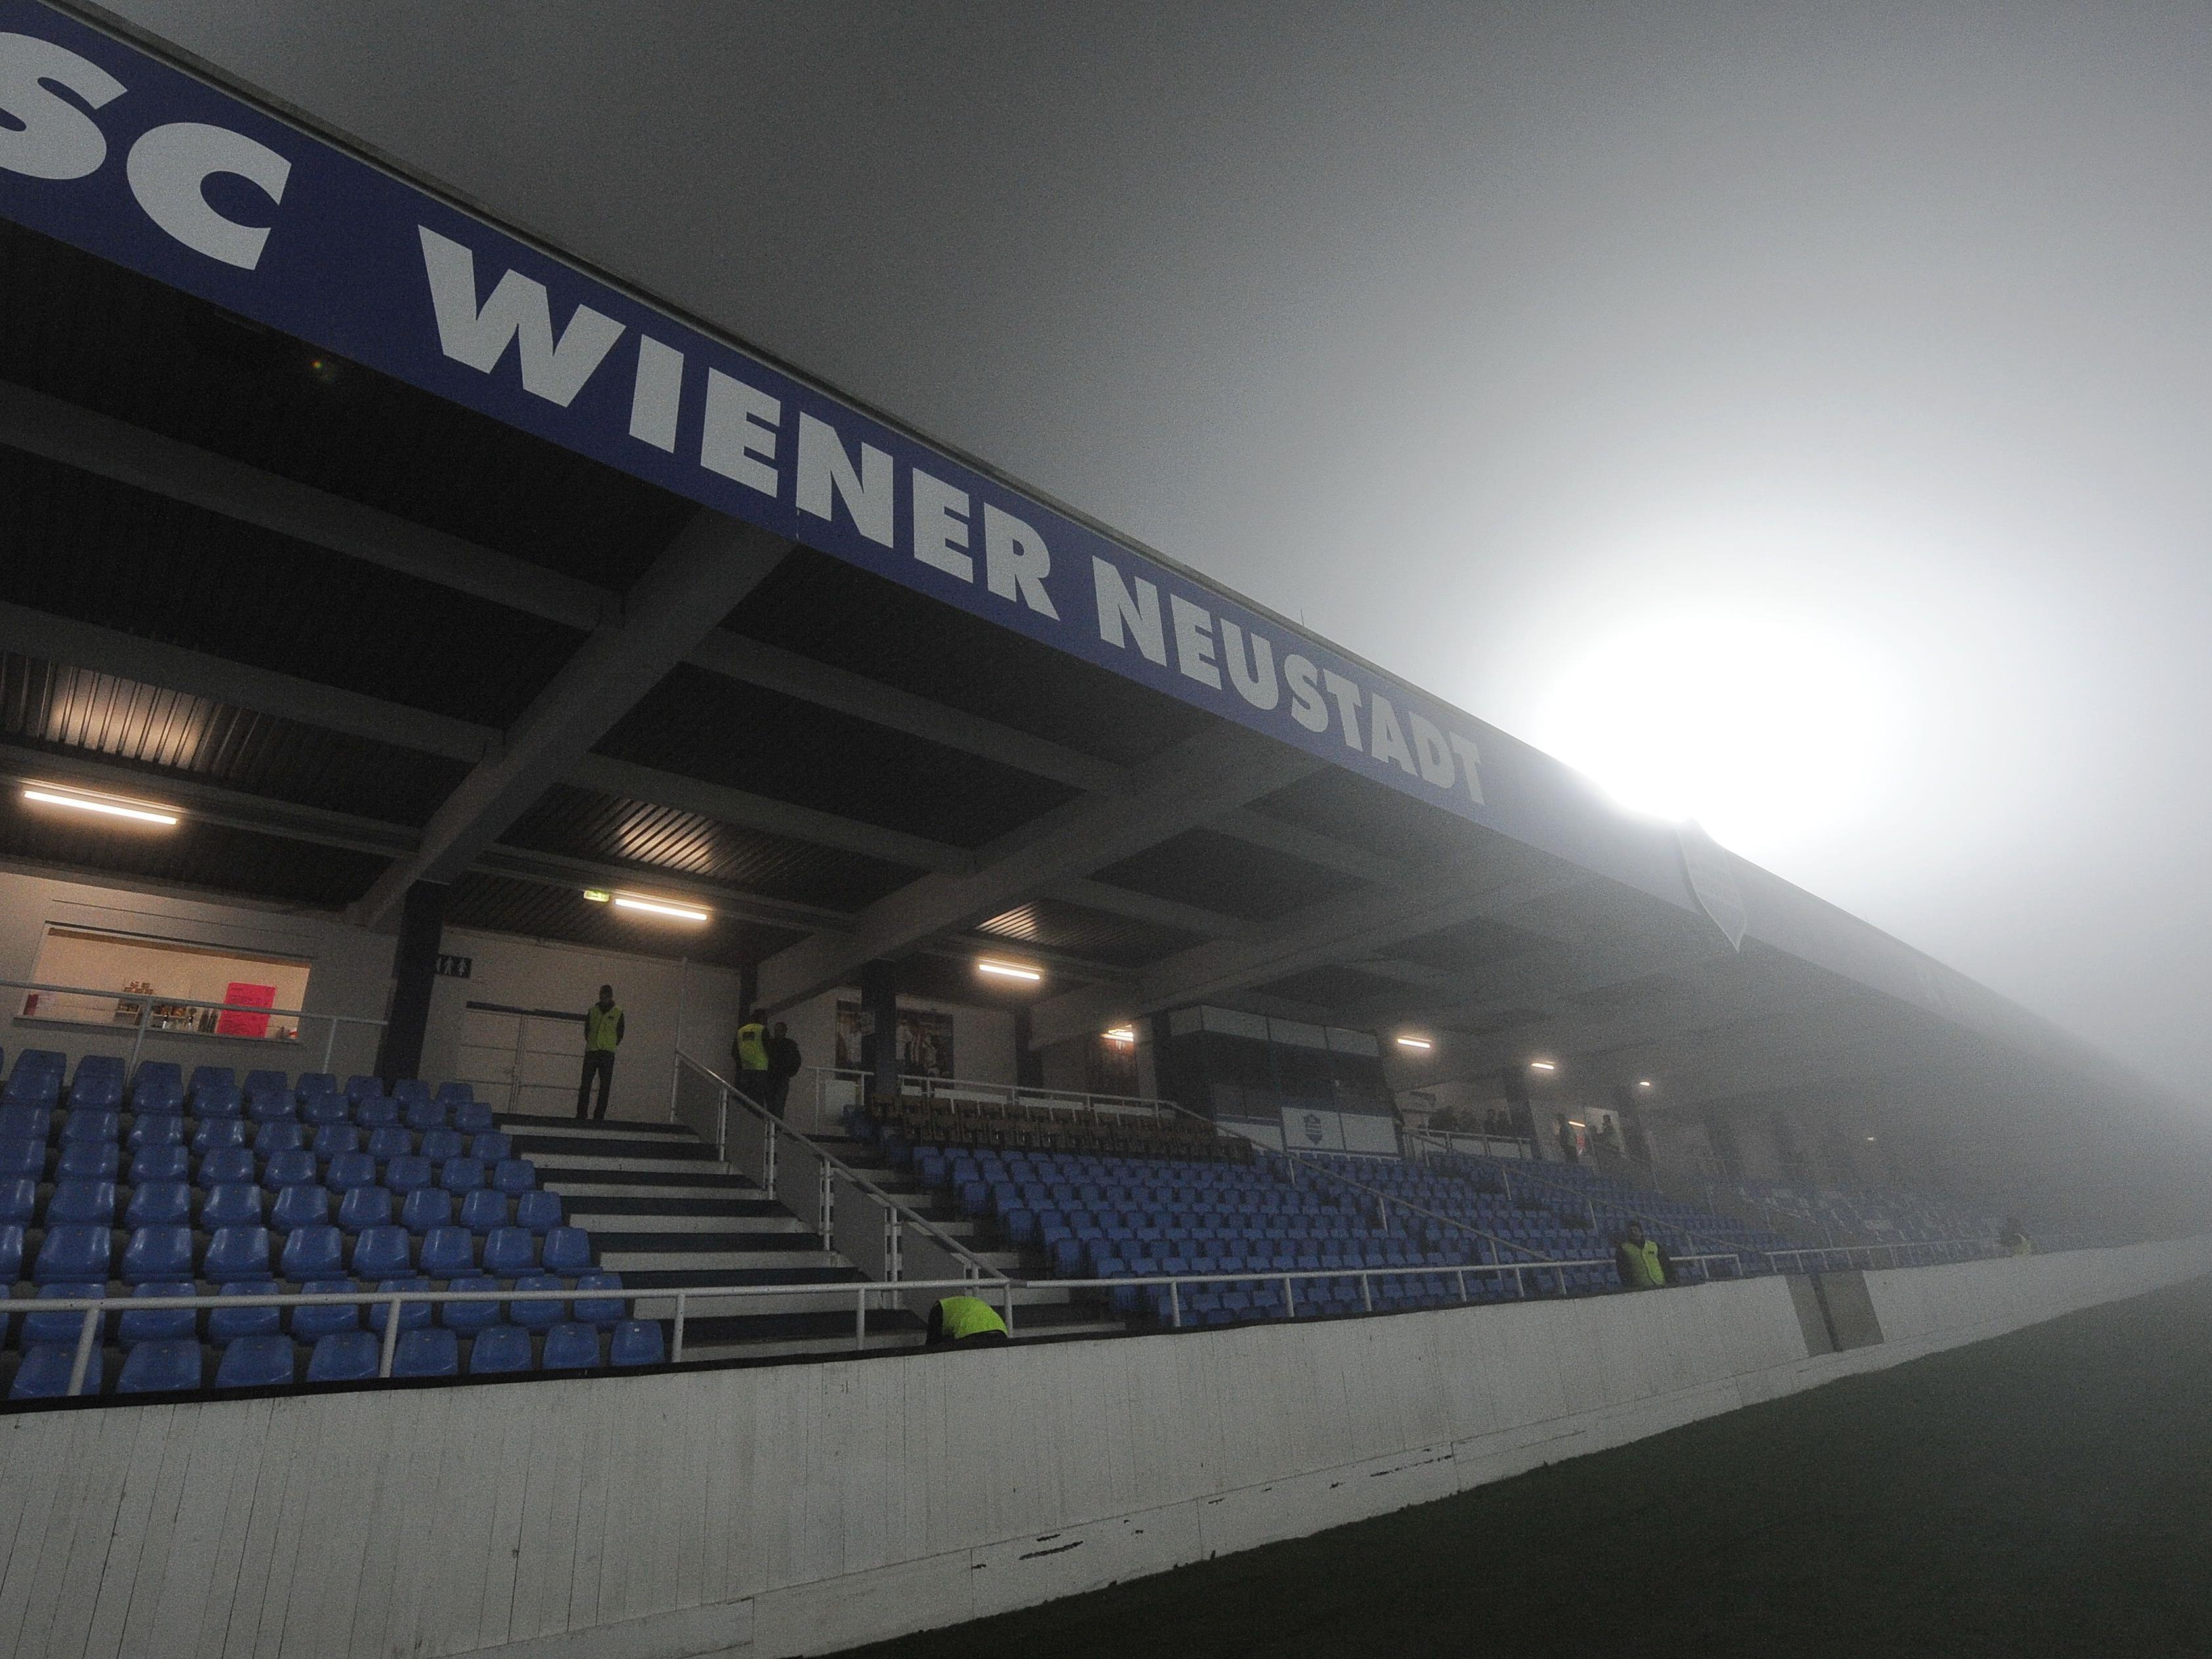 Das Stadion des SC Wiener Neustadt hat einen neuen Namen.